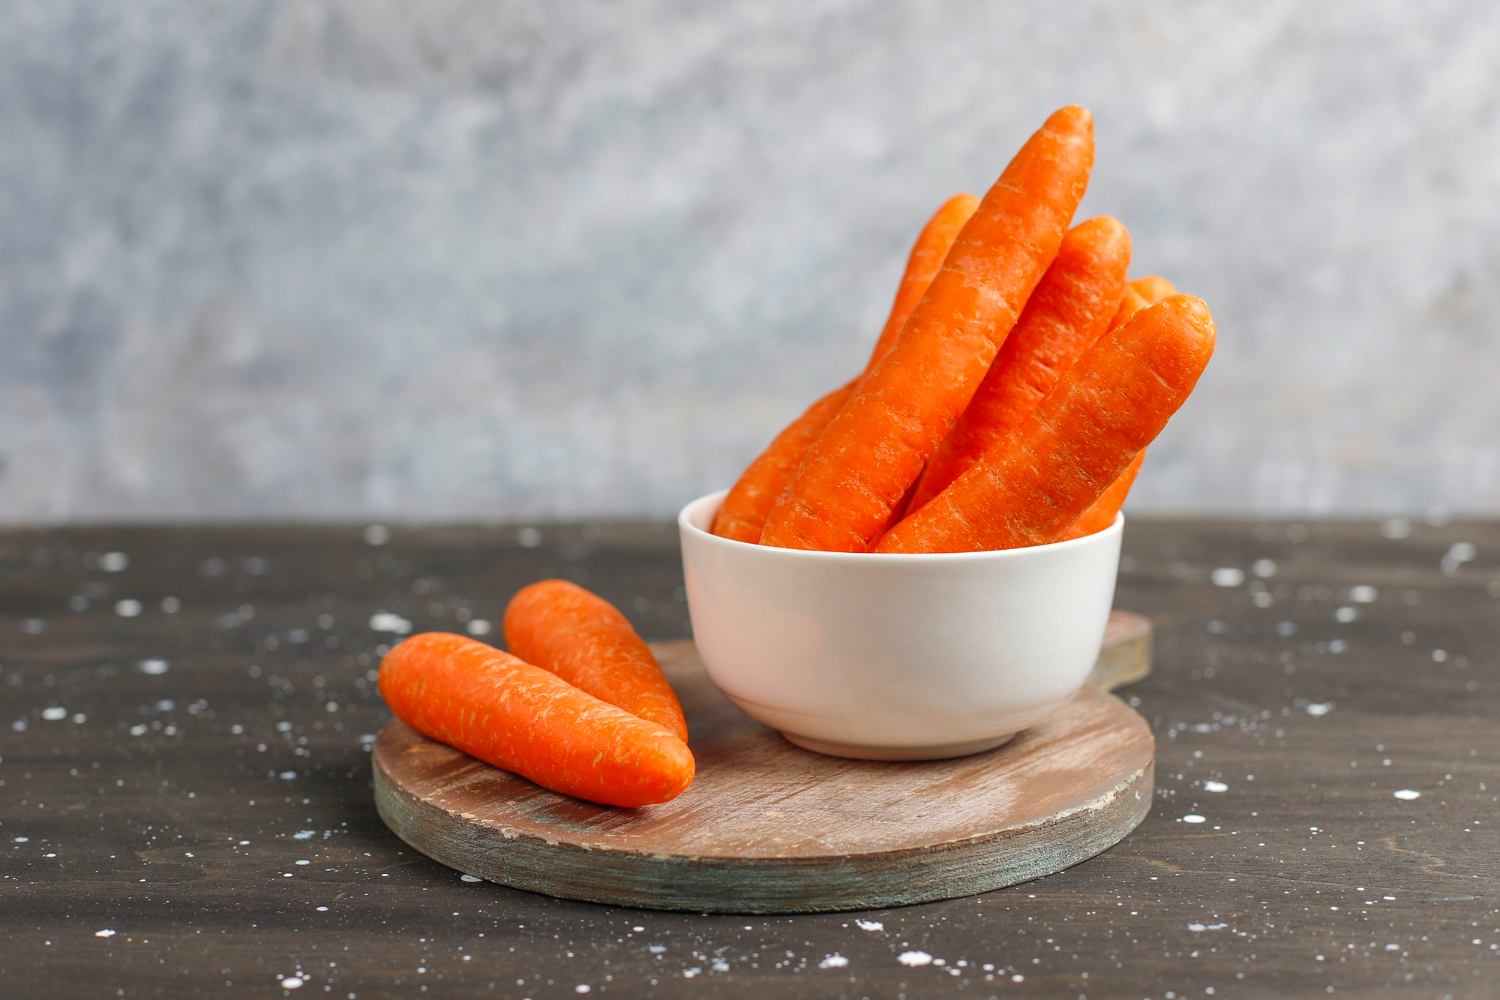 Що буде з вашим здоров'ям, якщо ви почнете пити морквяний сік щодня
